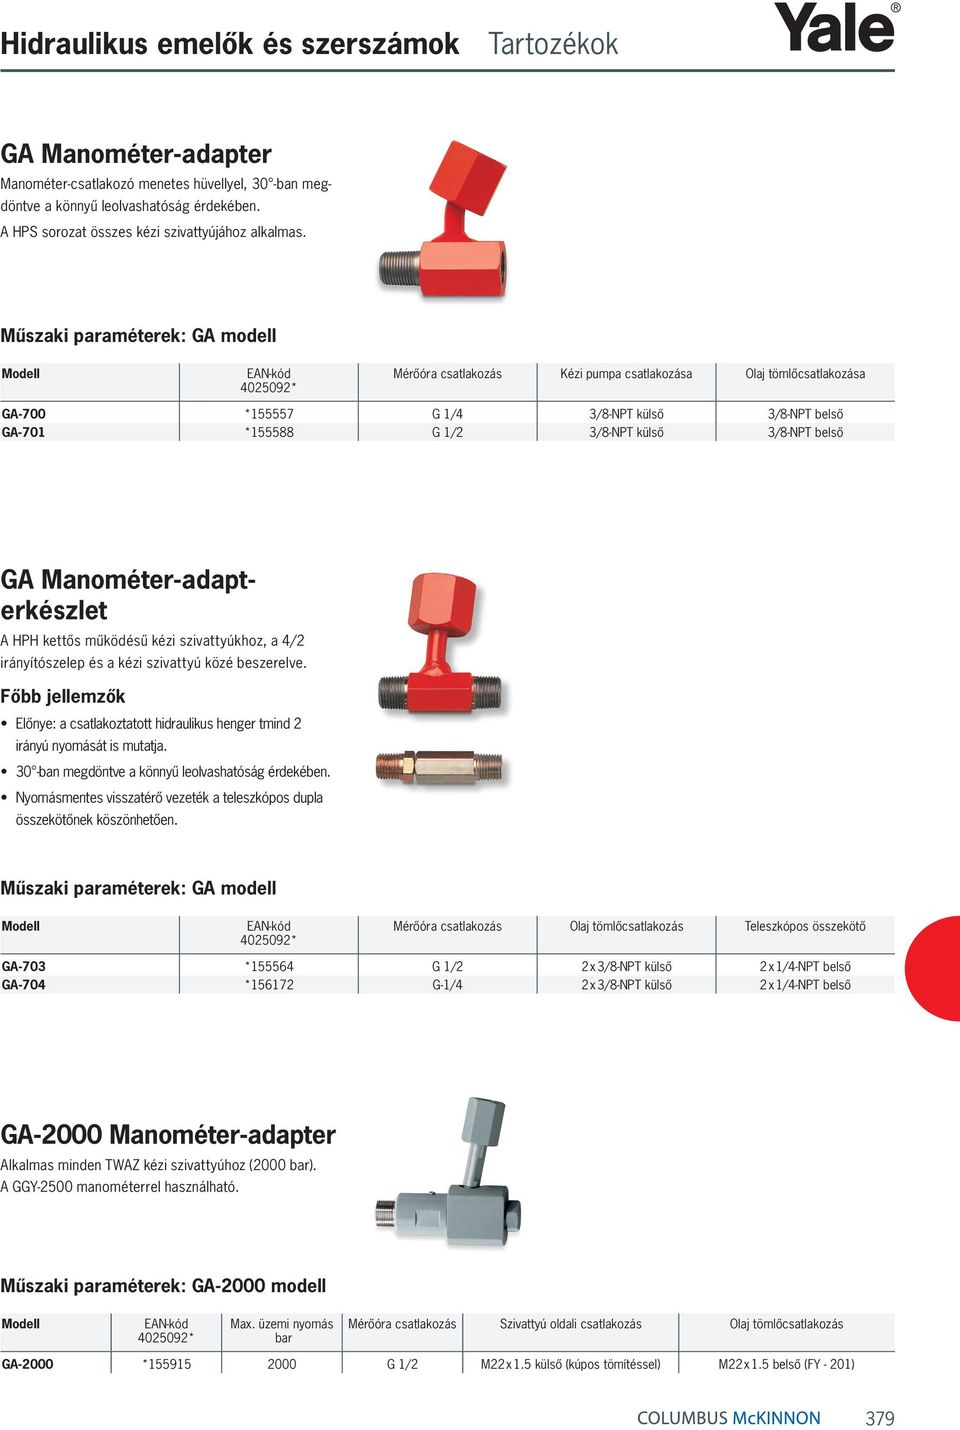 Manométer-adapterkészlet HH kettős működésű kézi szivattyúkhoz, a 4/2 irányítószelep és a kézi szivattyú közé beszerelve.